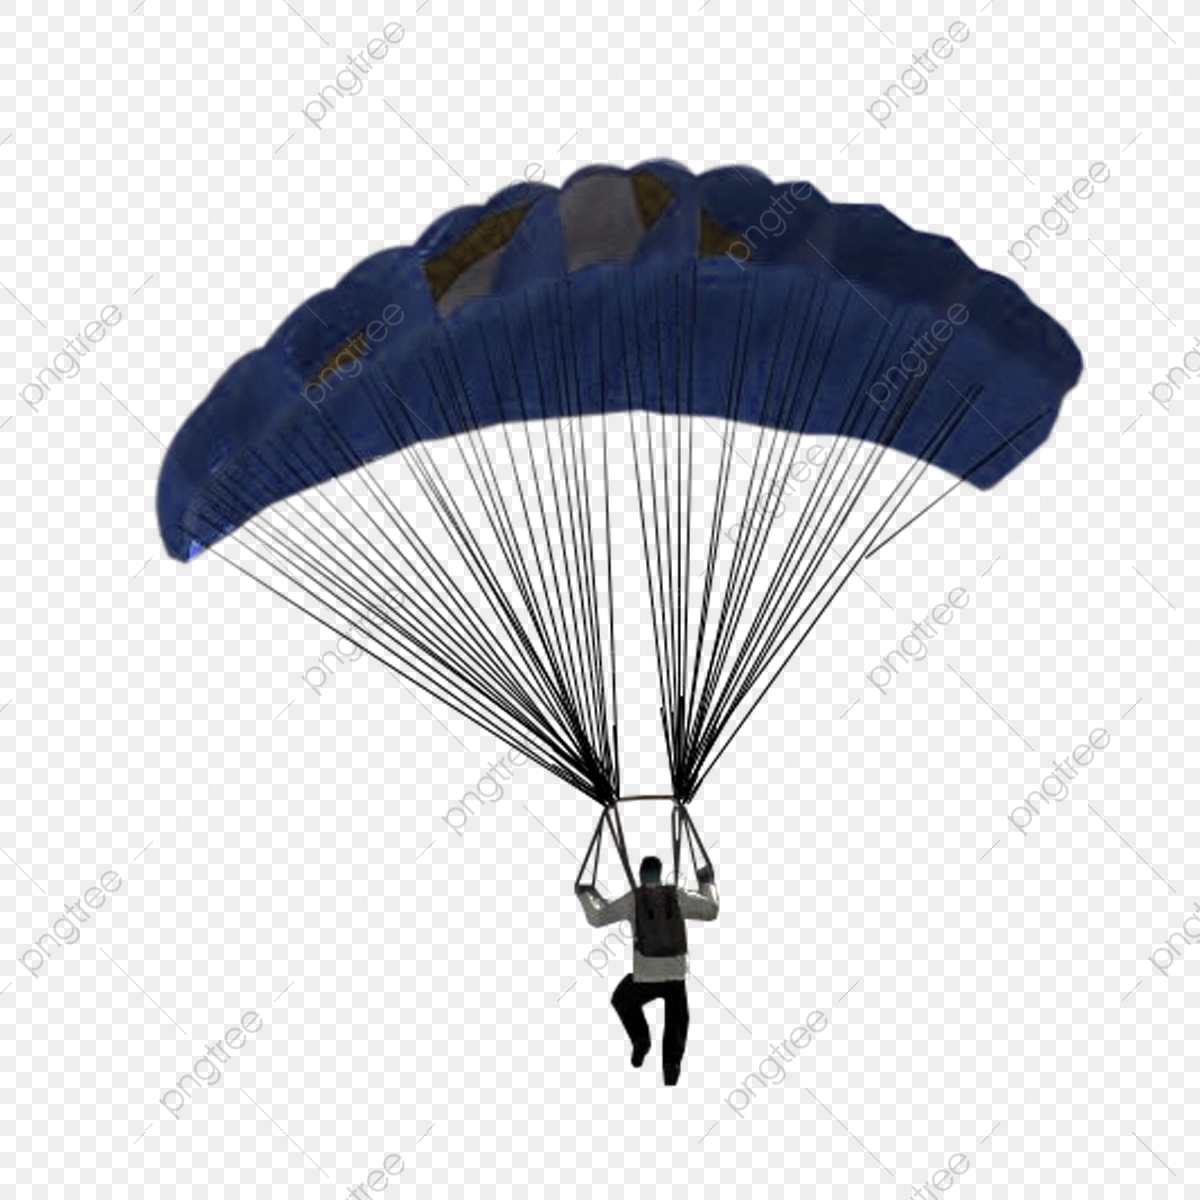 PUBG Mobile Squad Parachute Wallpapers